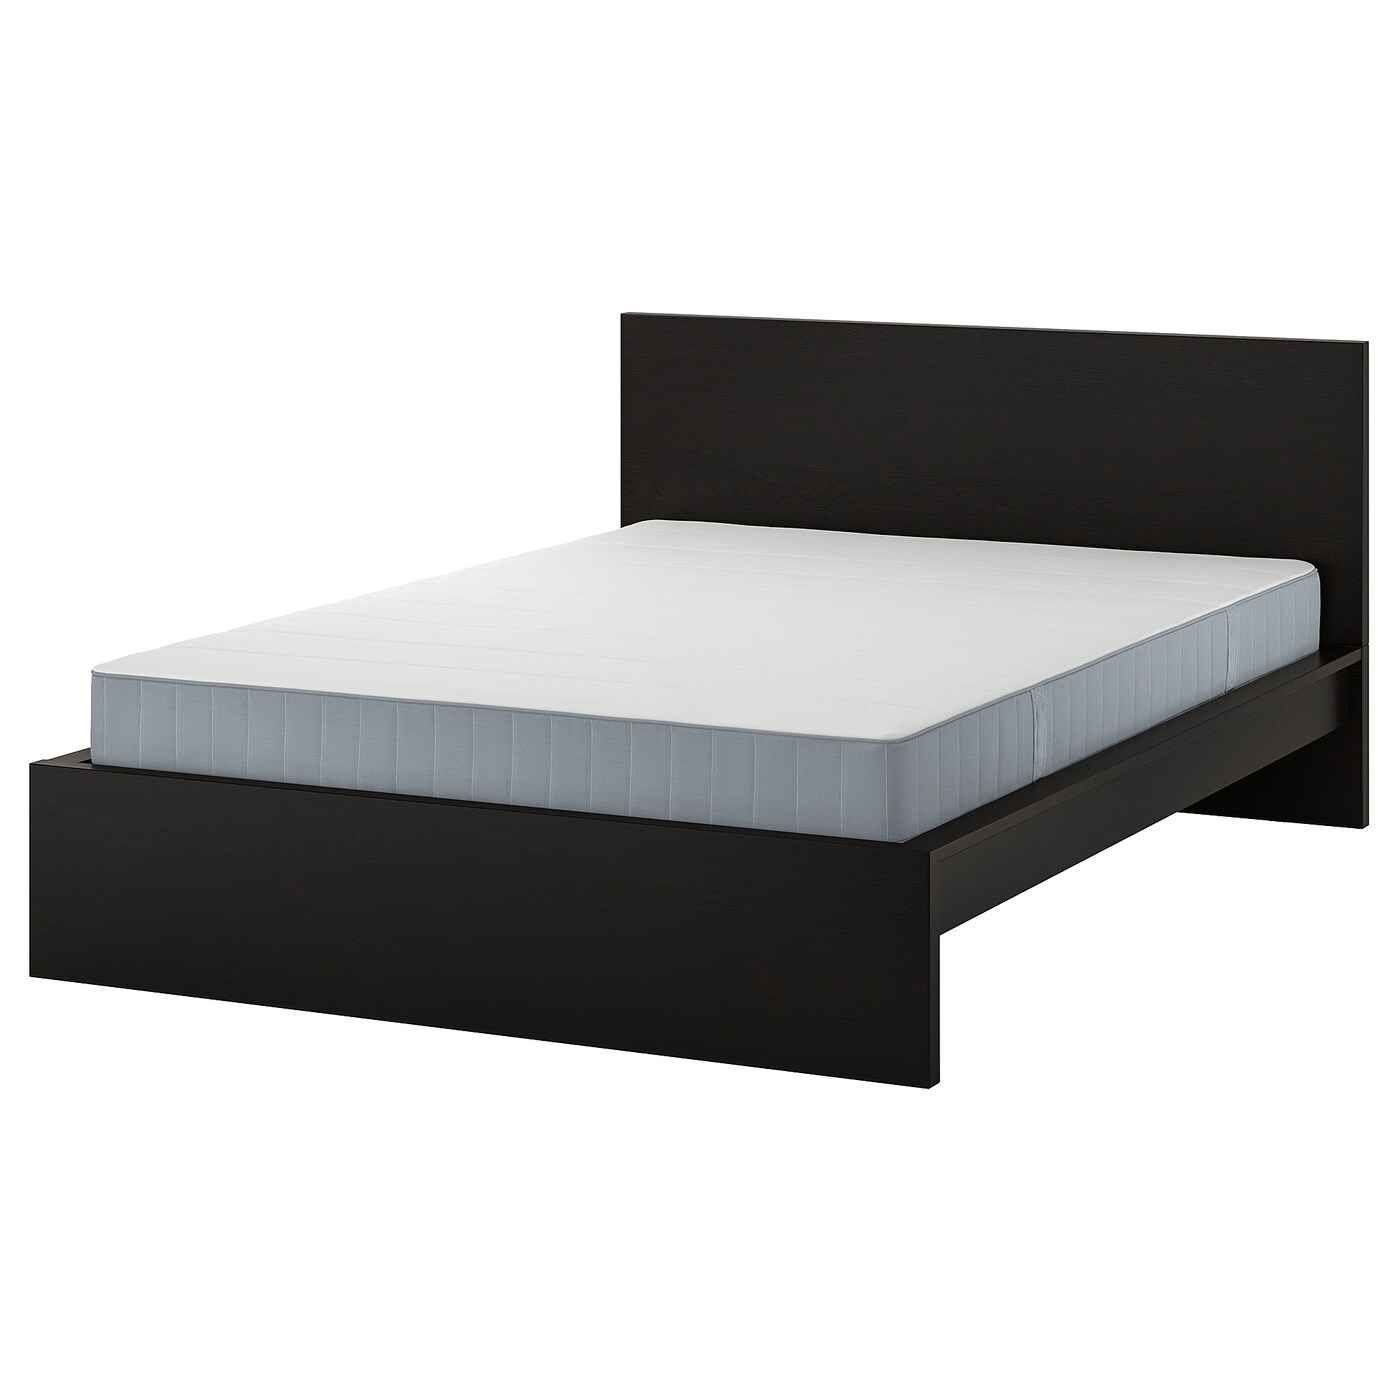 Кровать - IKEA MALM, 200х140 см, жесткий матрас,  черный, МАЛЬМ ИКЕА